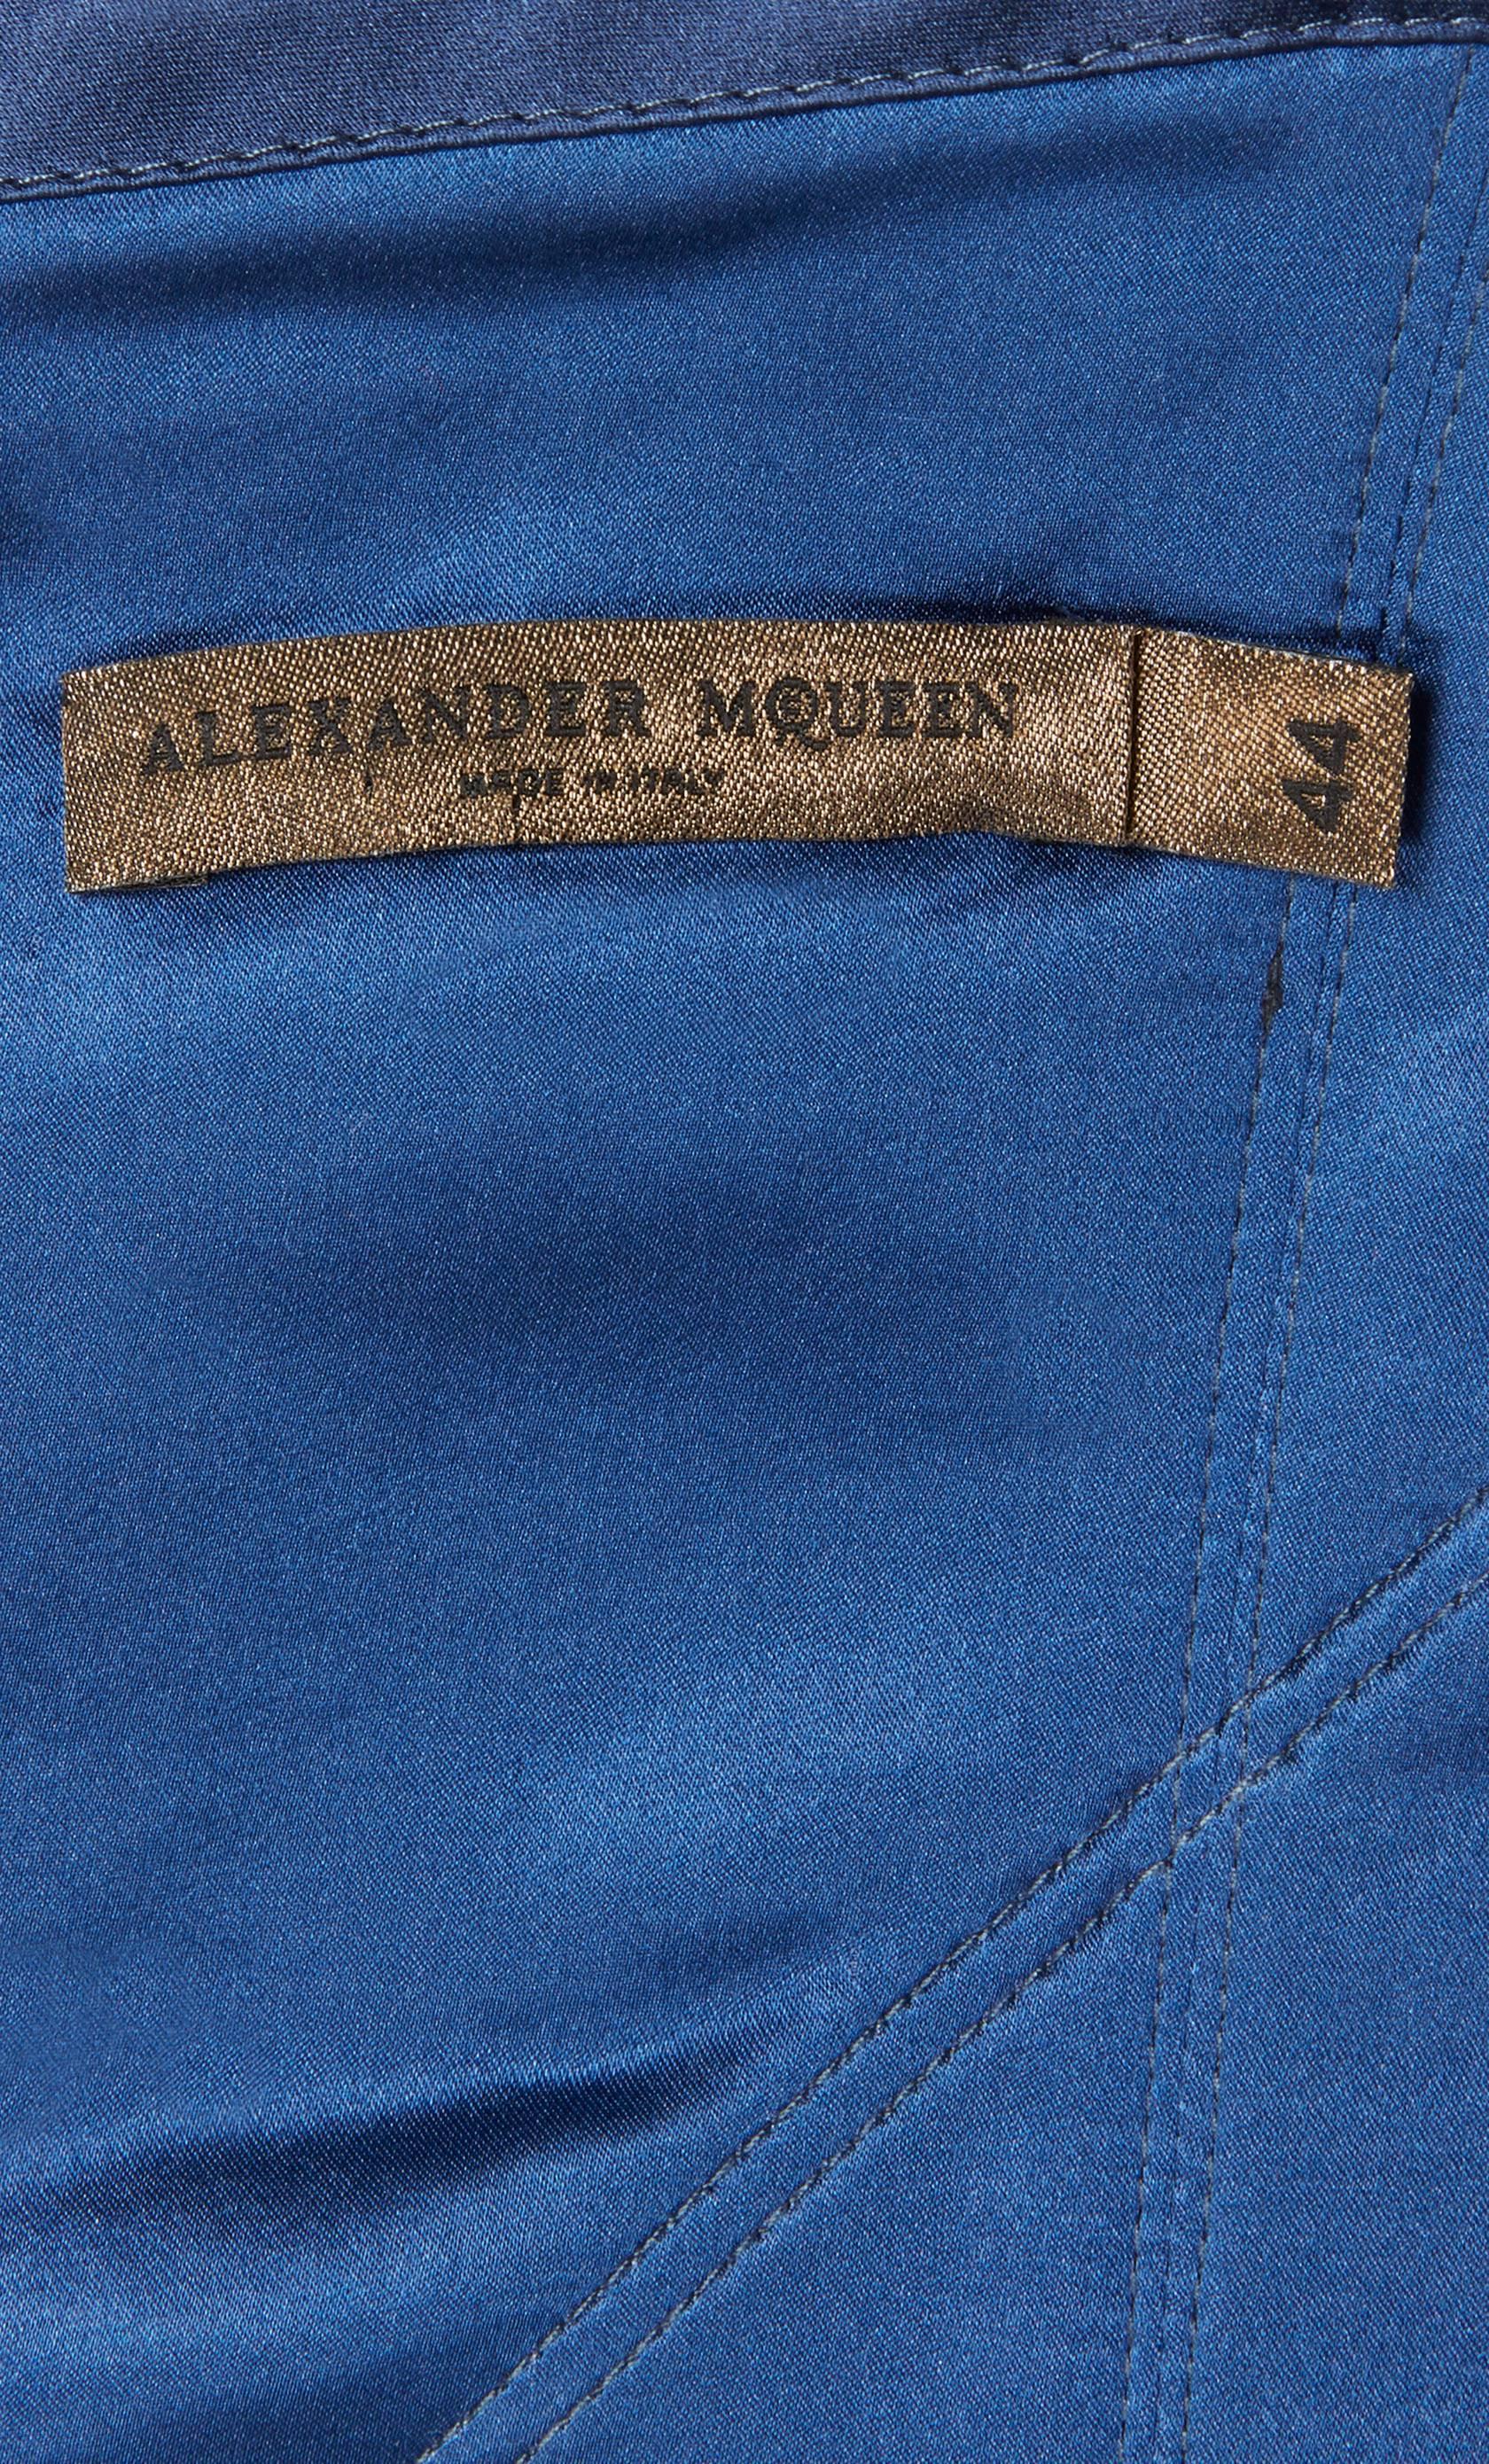 Alexander McQueen, Blue dress, Autumn/Winter 2008 For Sale 1